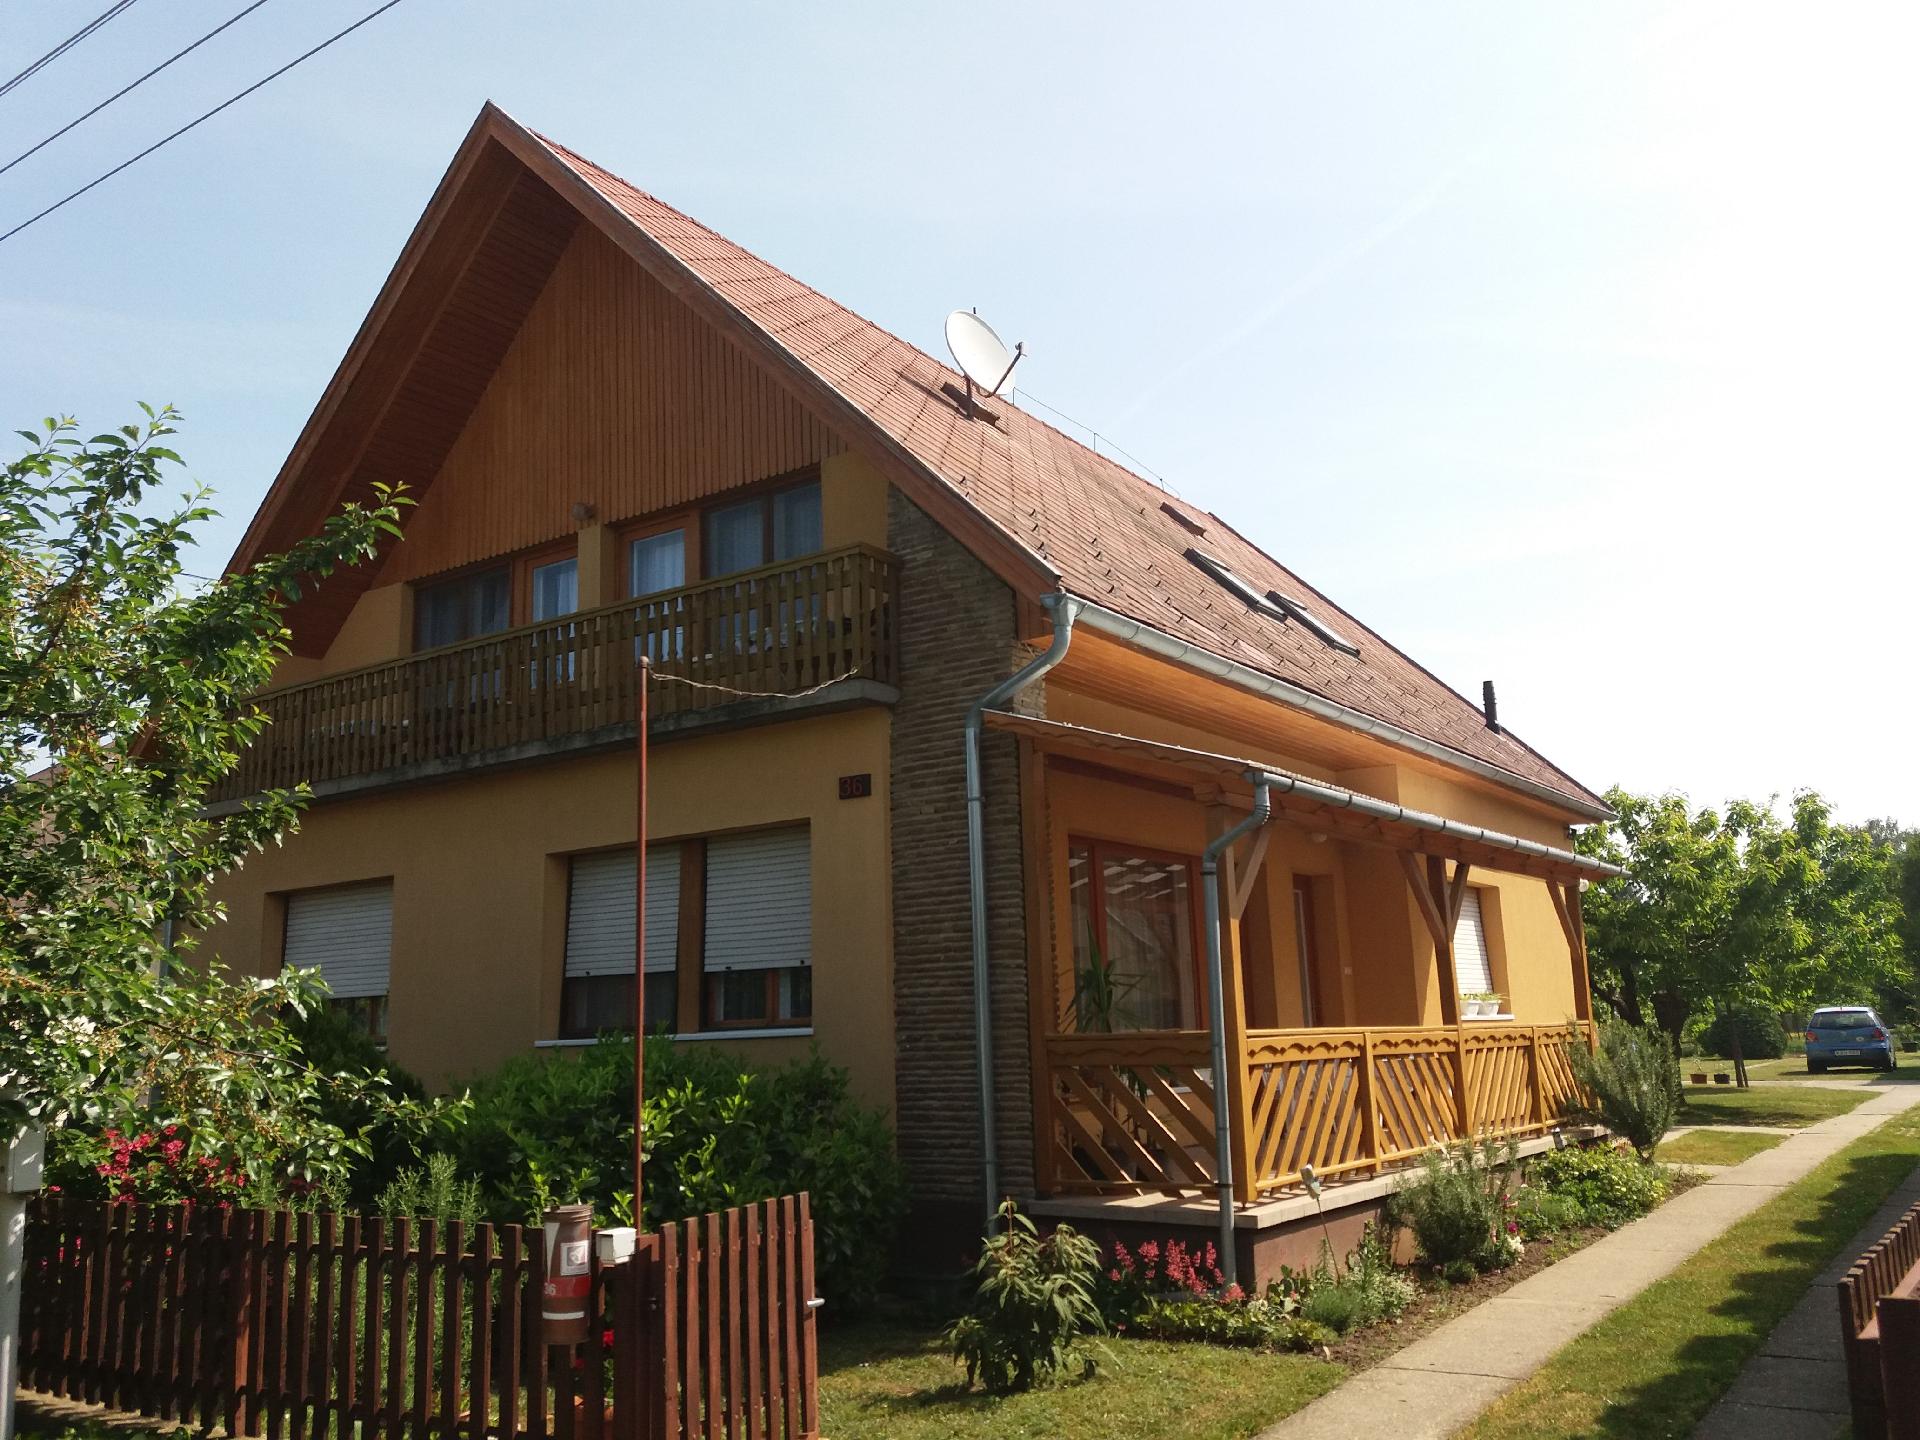 Appartement in Balatonboglár mit Terrasse u Ferienhaus am Balaton Plattensee